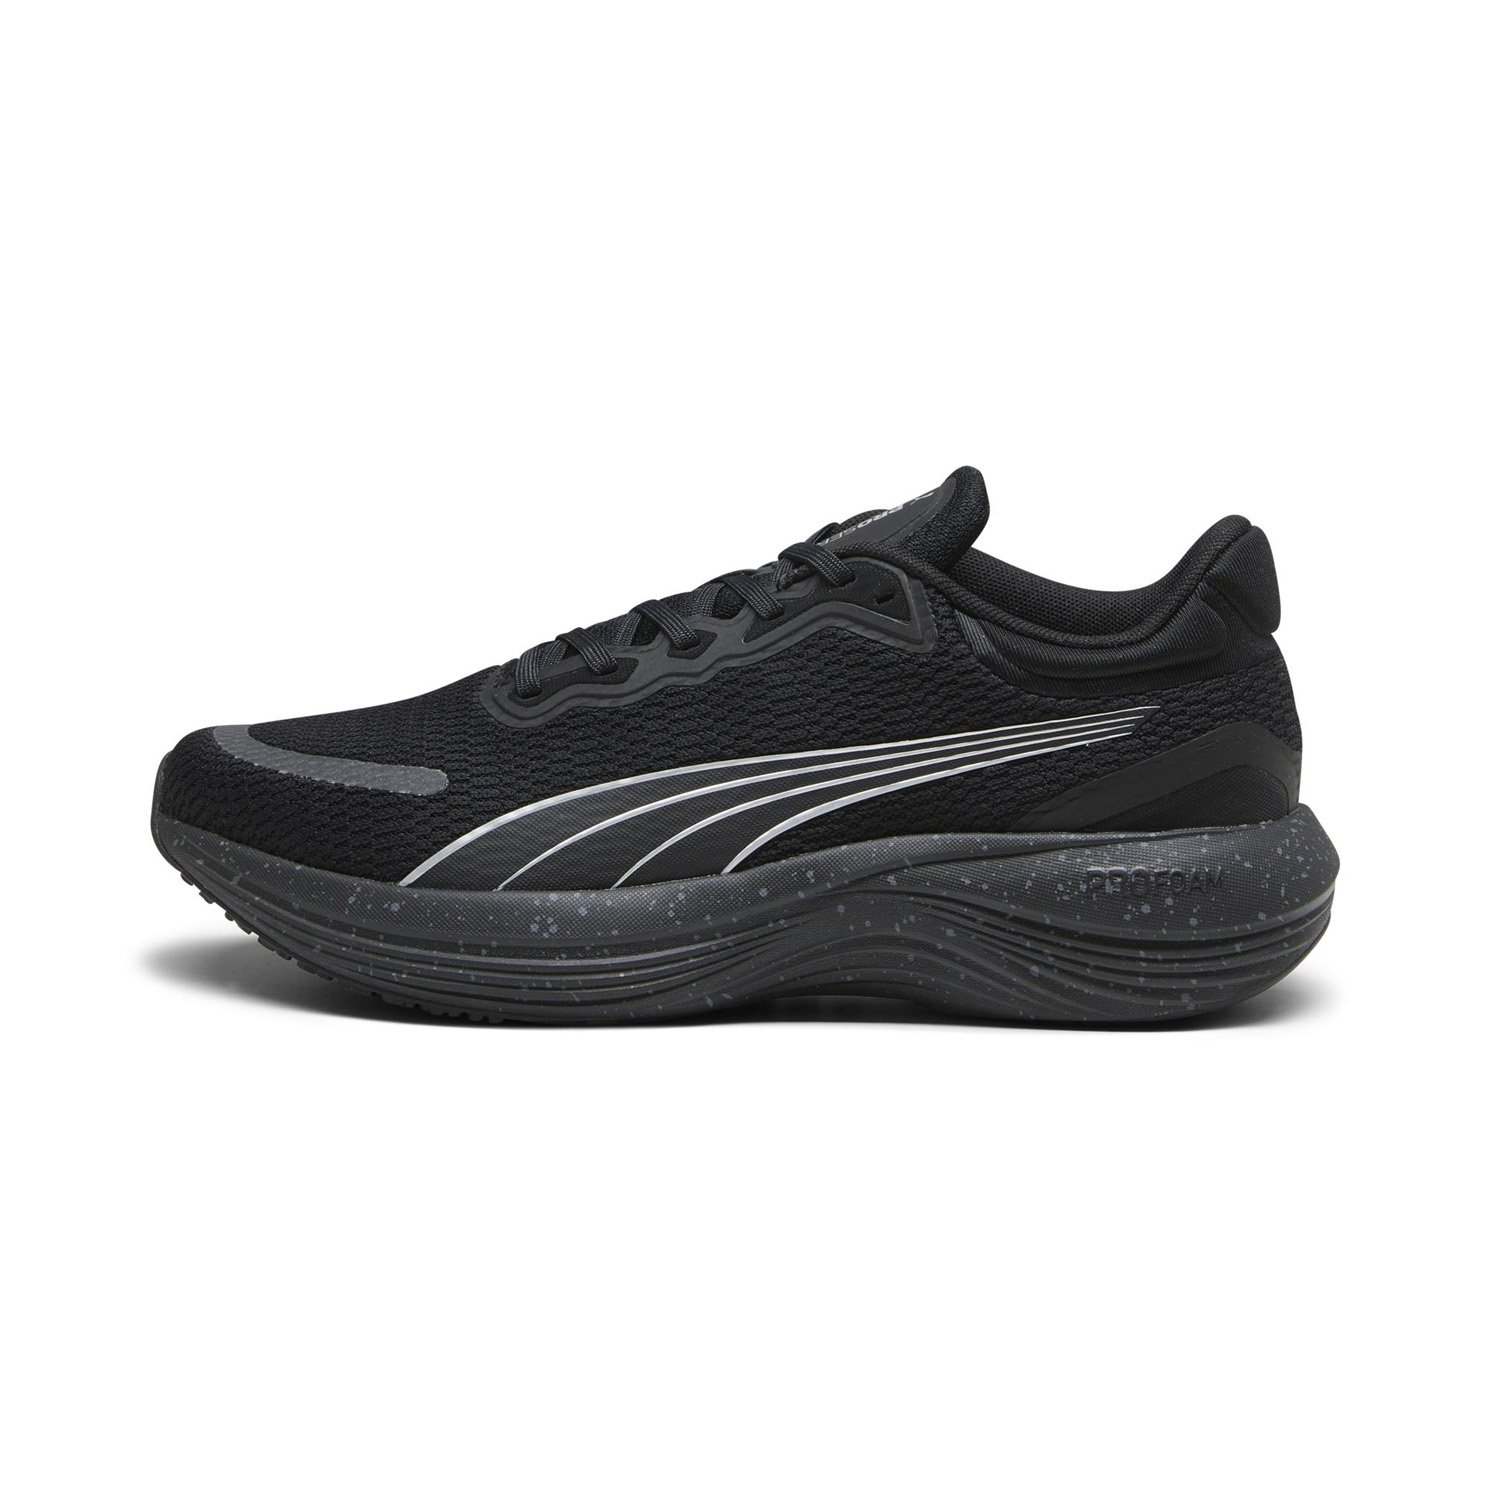 Puma Scend Pro Erkek Koşu Ayakkabısı - Siyah - 1